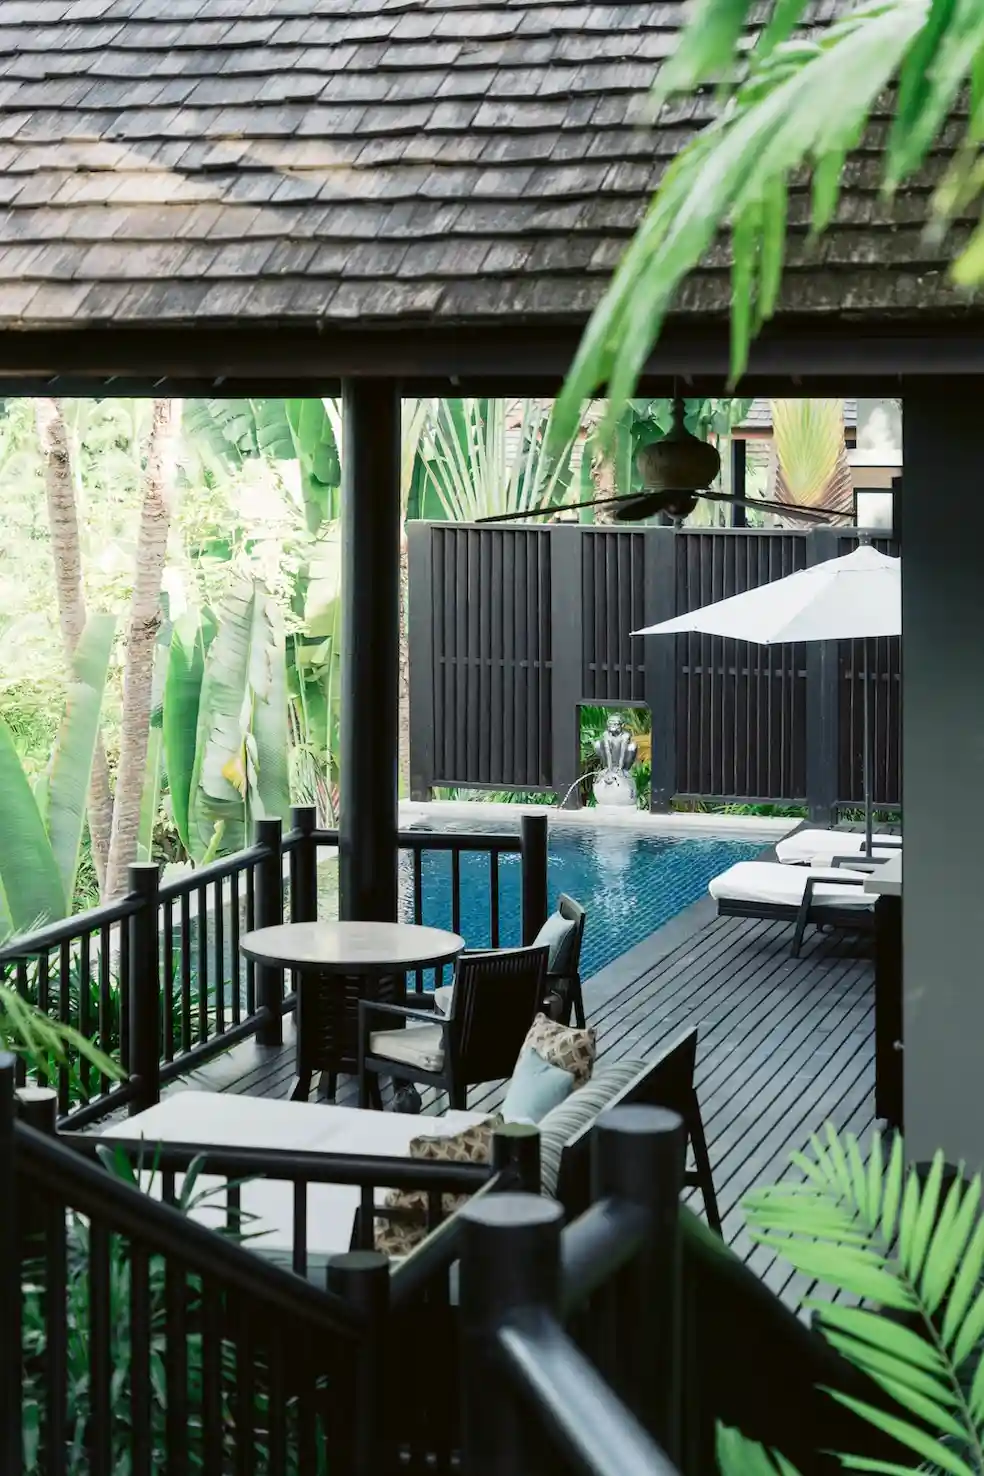 CS086 Luxurious 4 Bedrooms Villa in 5 Star Resort View 028